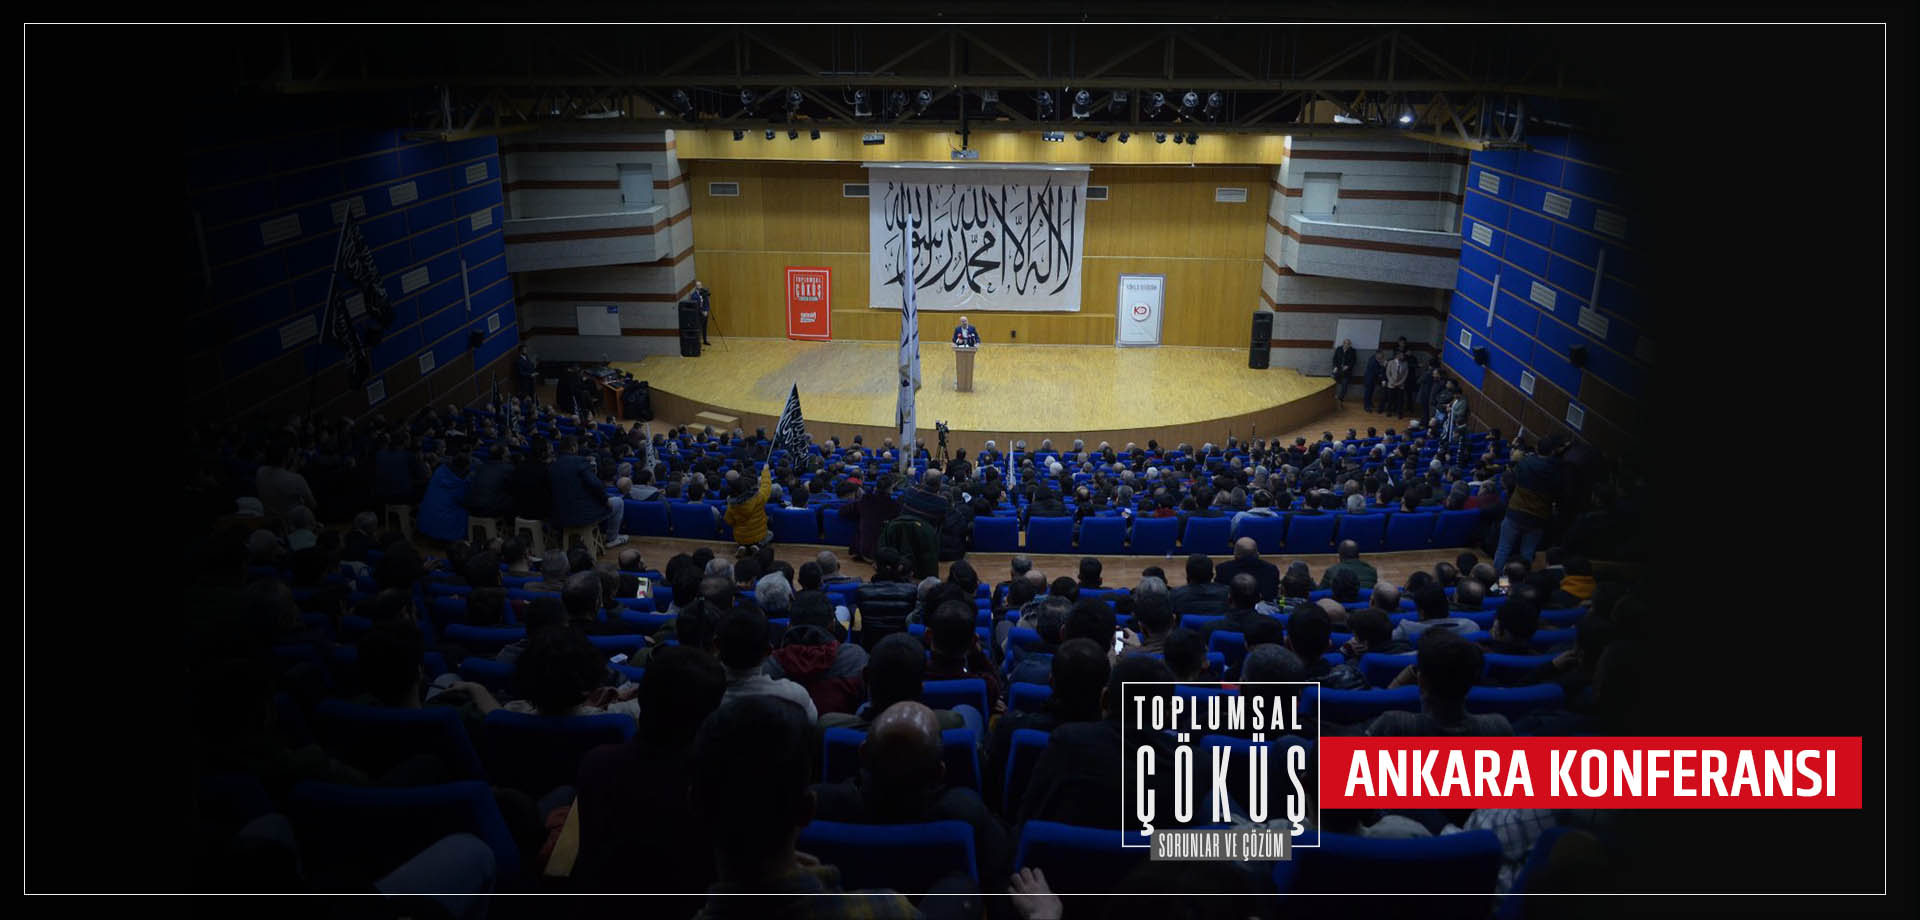 Toplumsal Çöküş - Sorunlar ve Çözüm Konferansı - Ankara